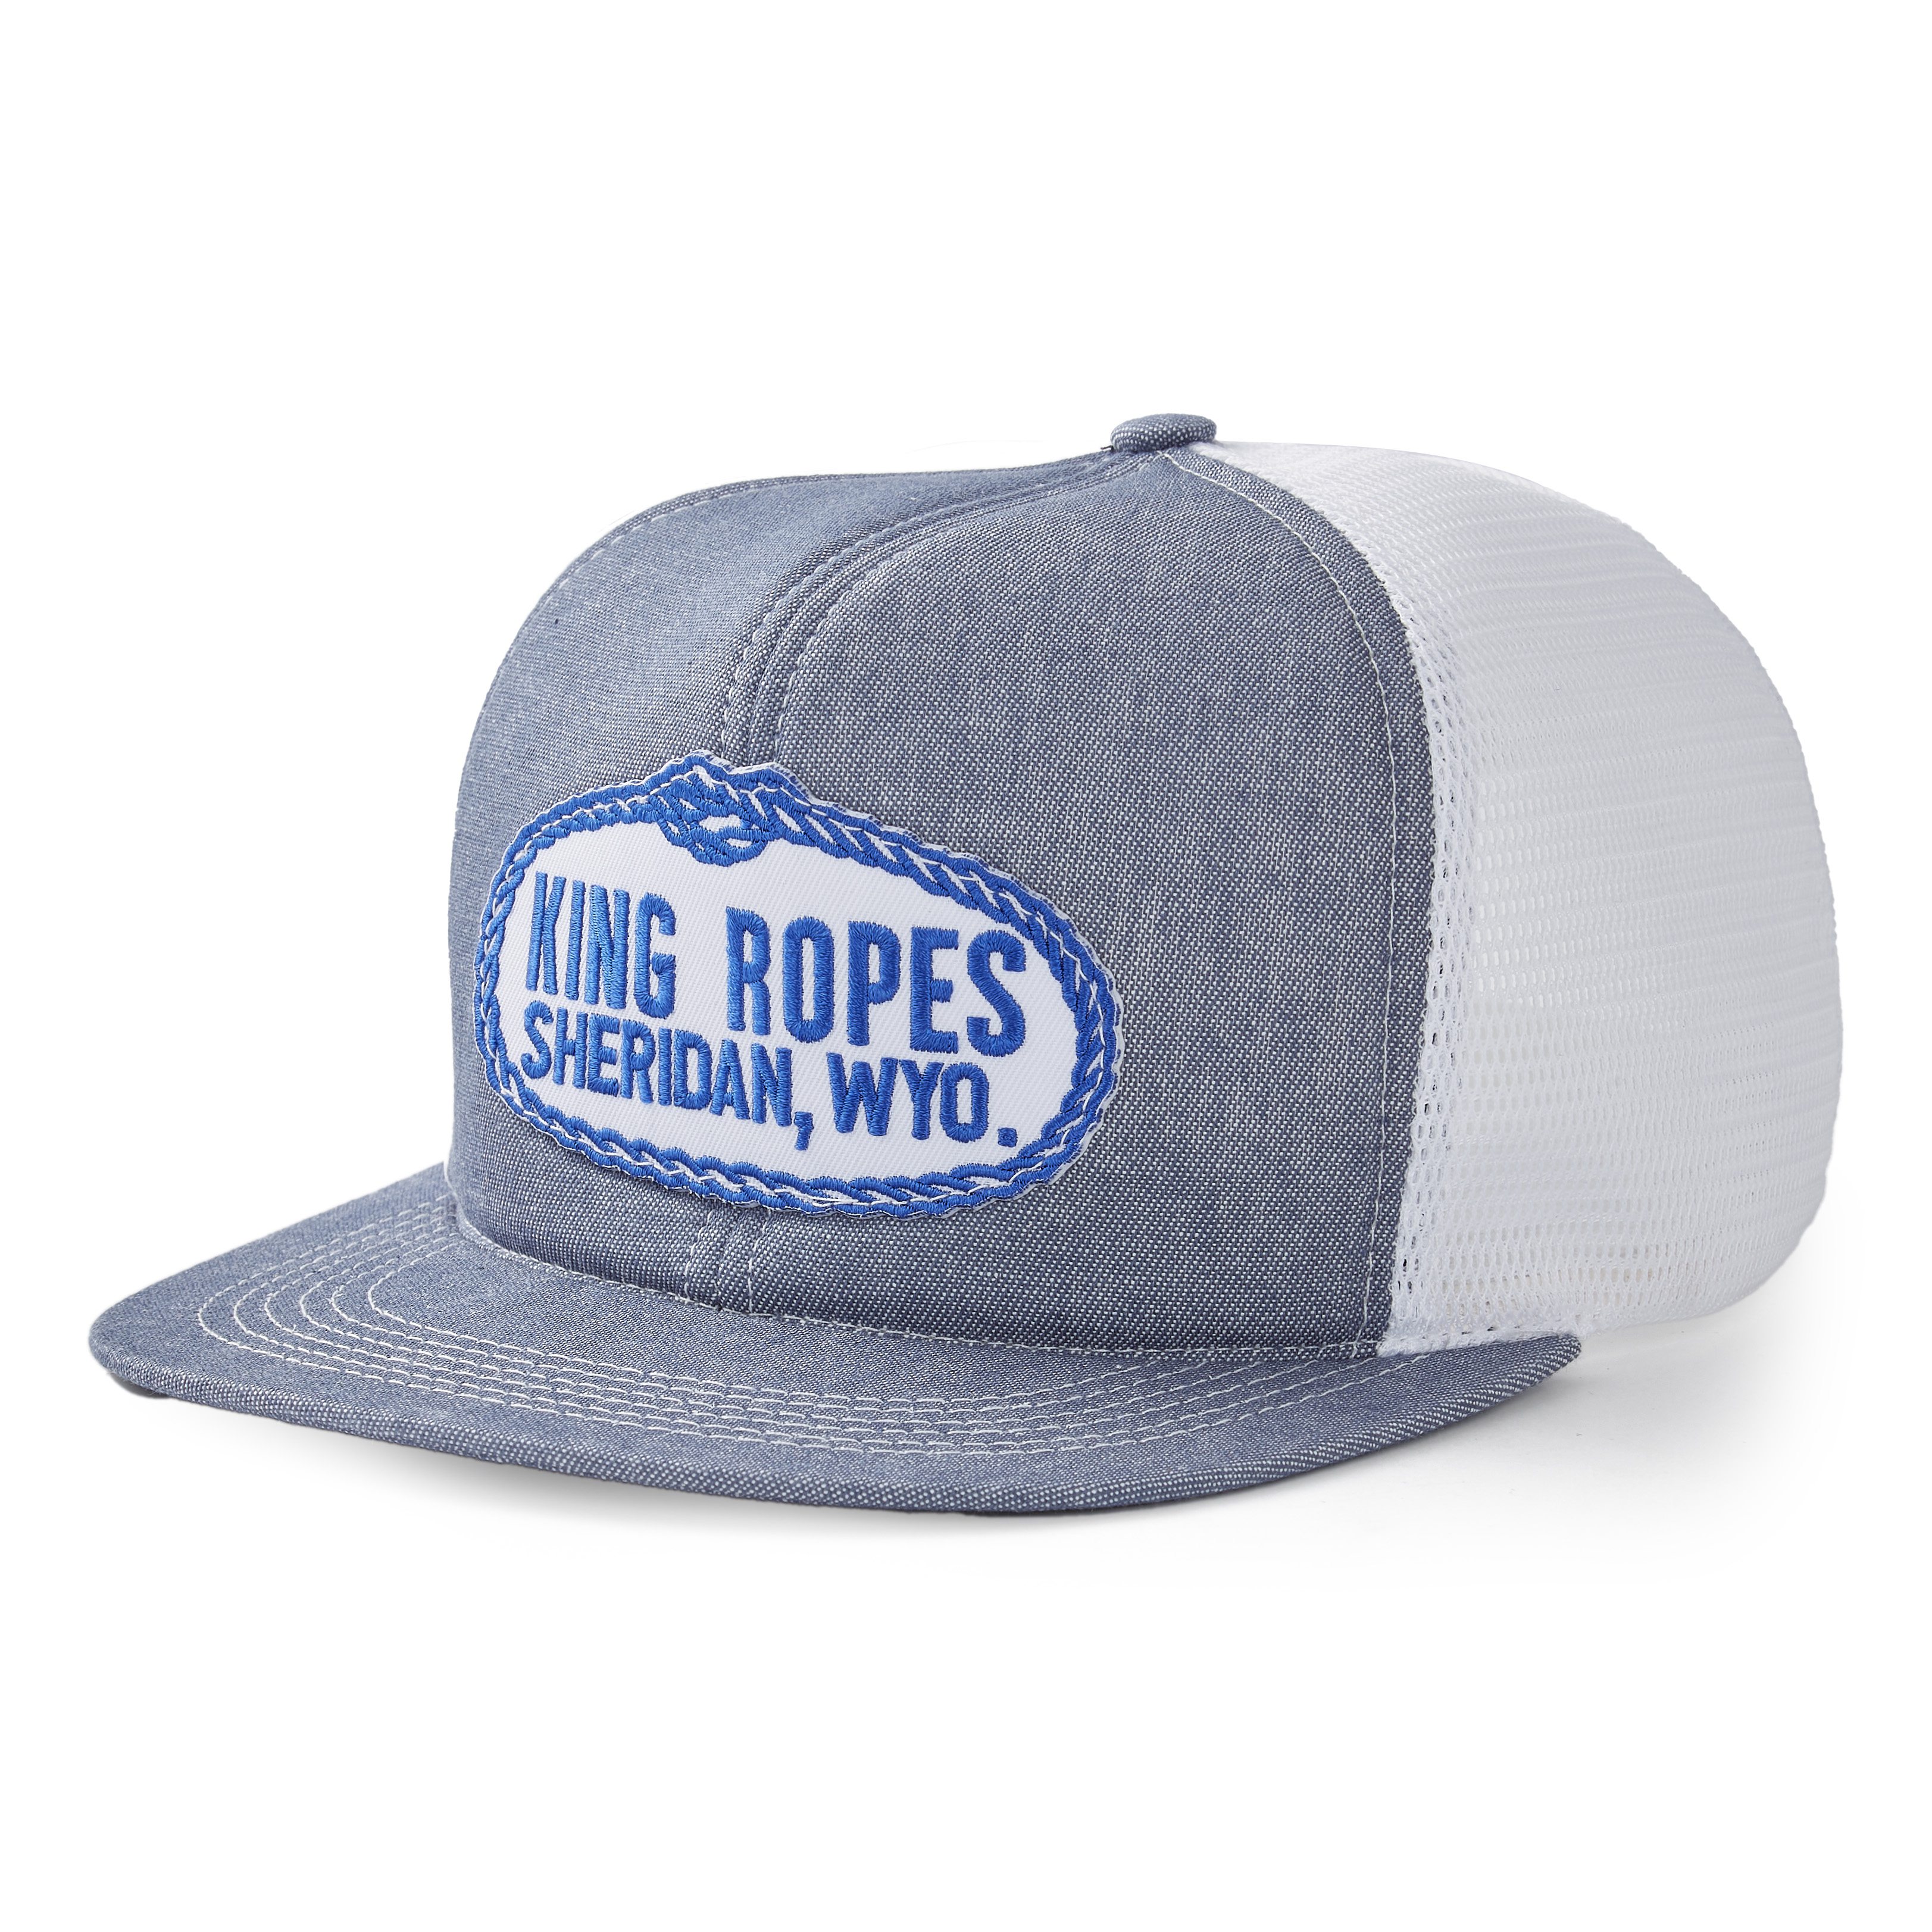 King's Saddlery King Ropes Patch Trucker Hat - Denim | Trucker